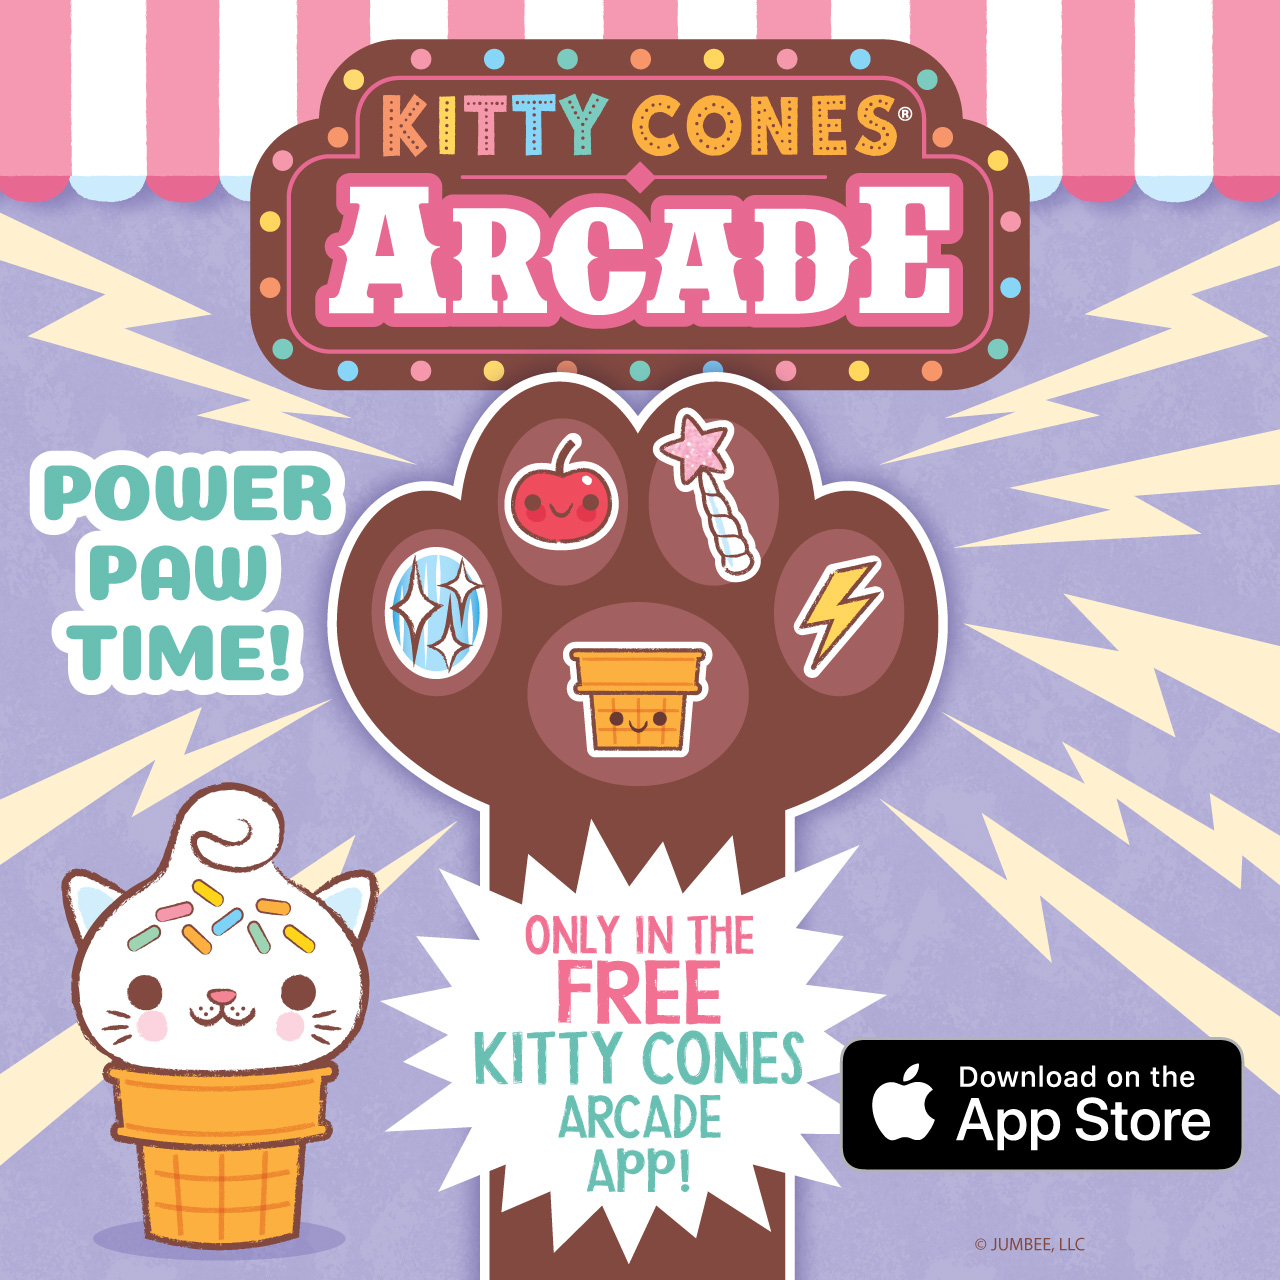 Kitty Cones Arcade App!